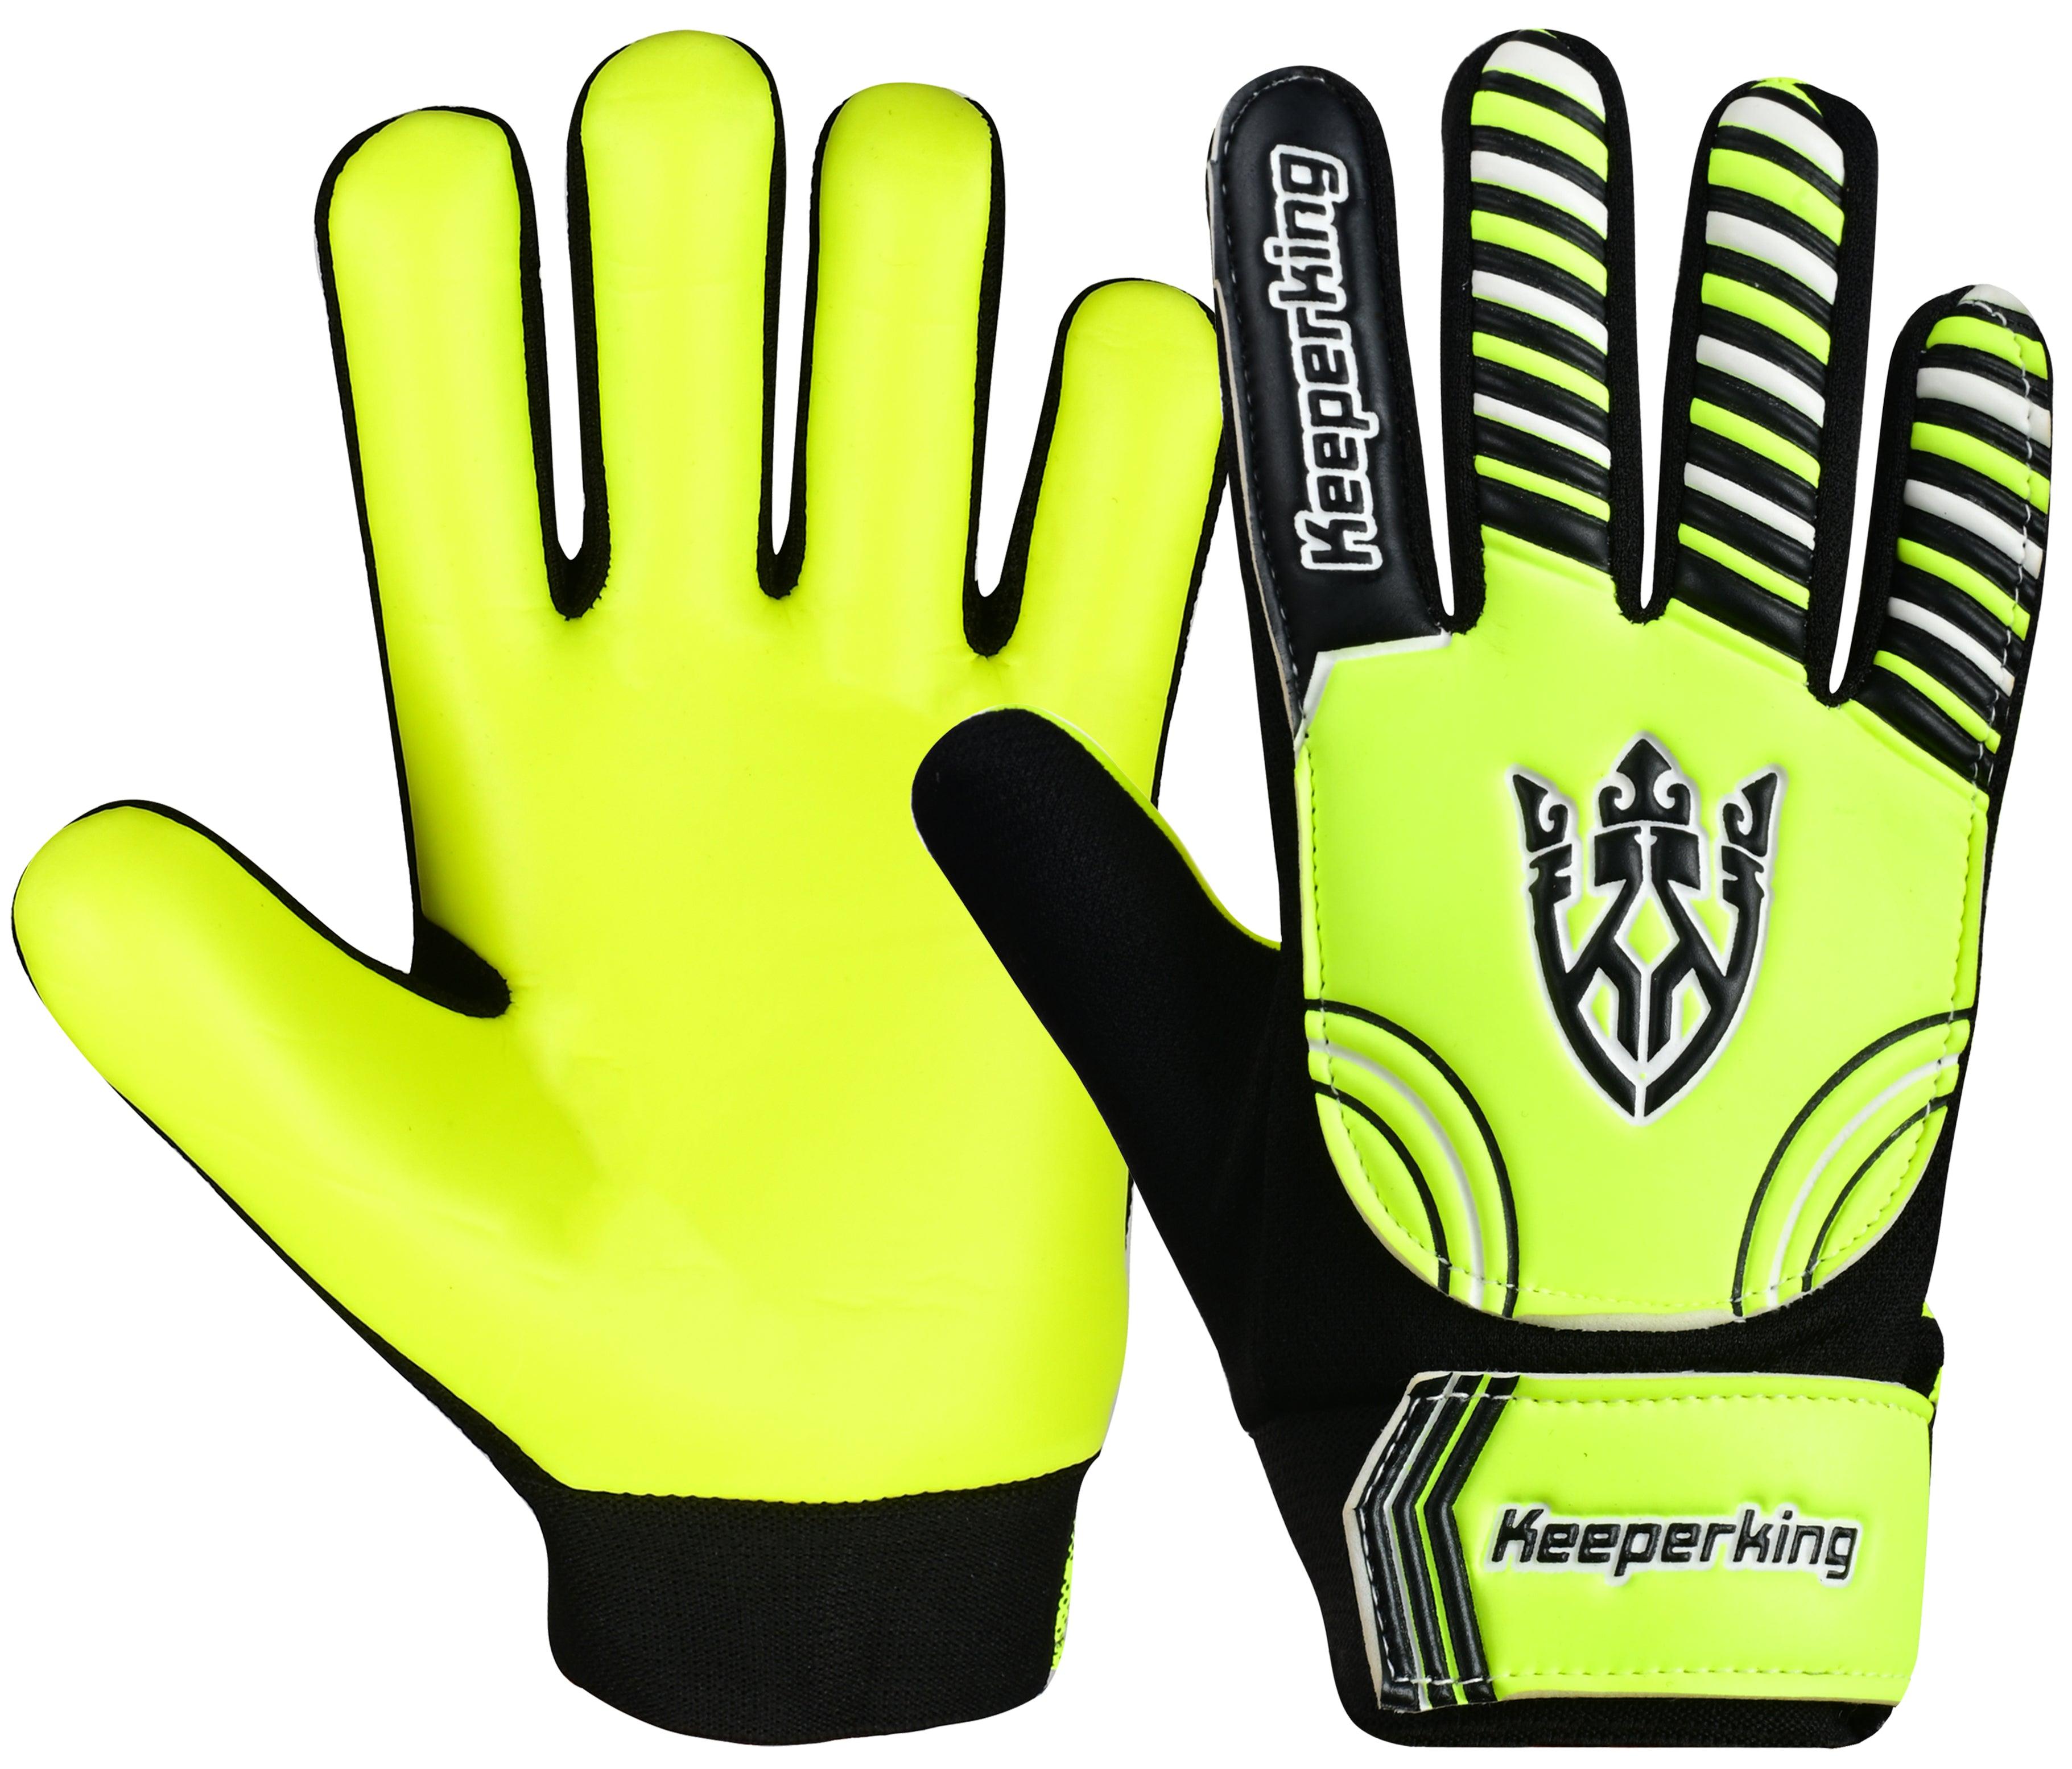 CLAW 2.0 YELLOW children's goalkeeper gloves